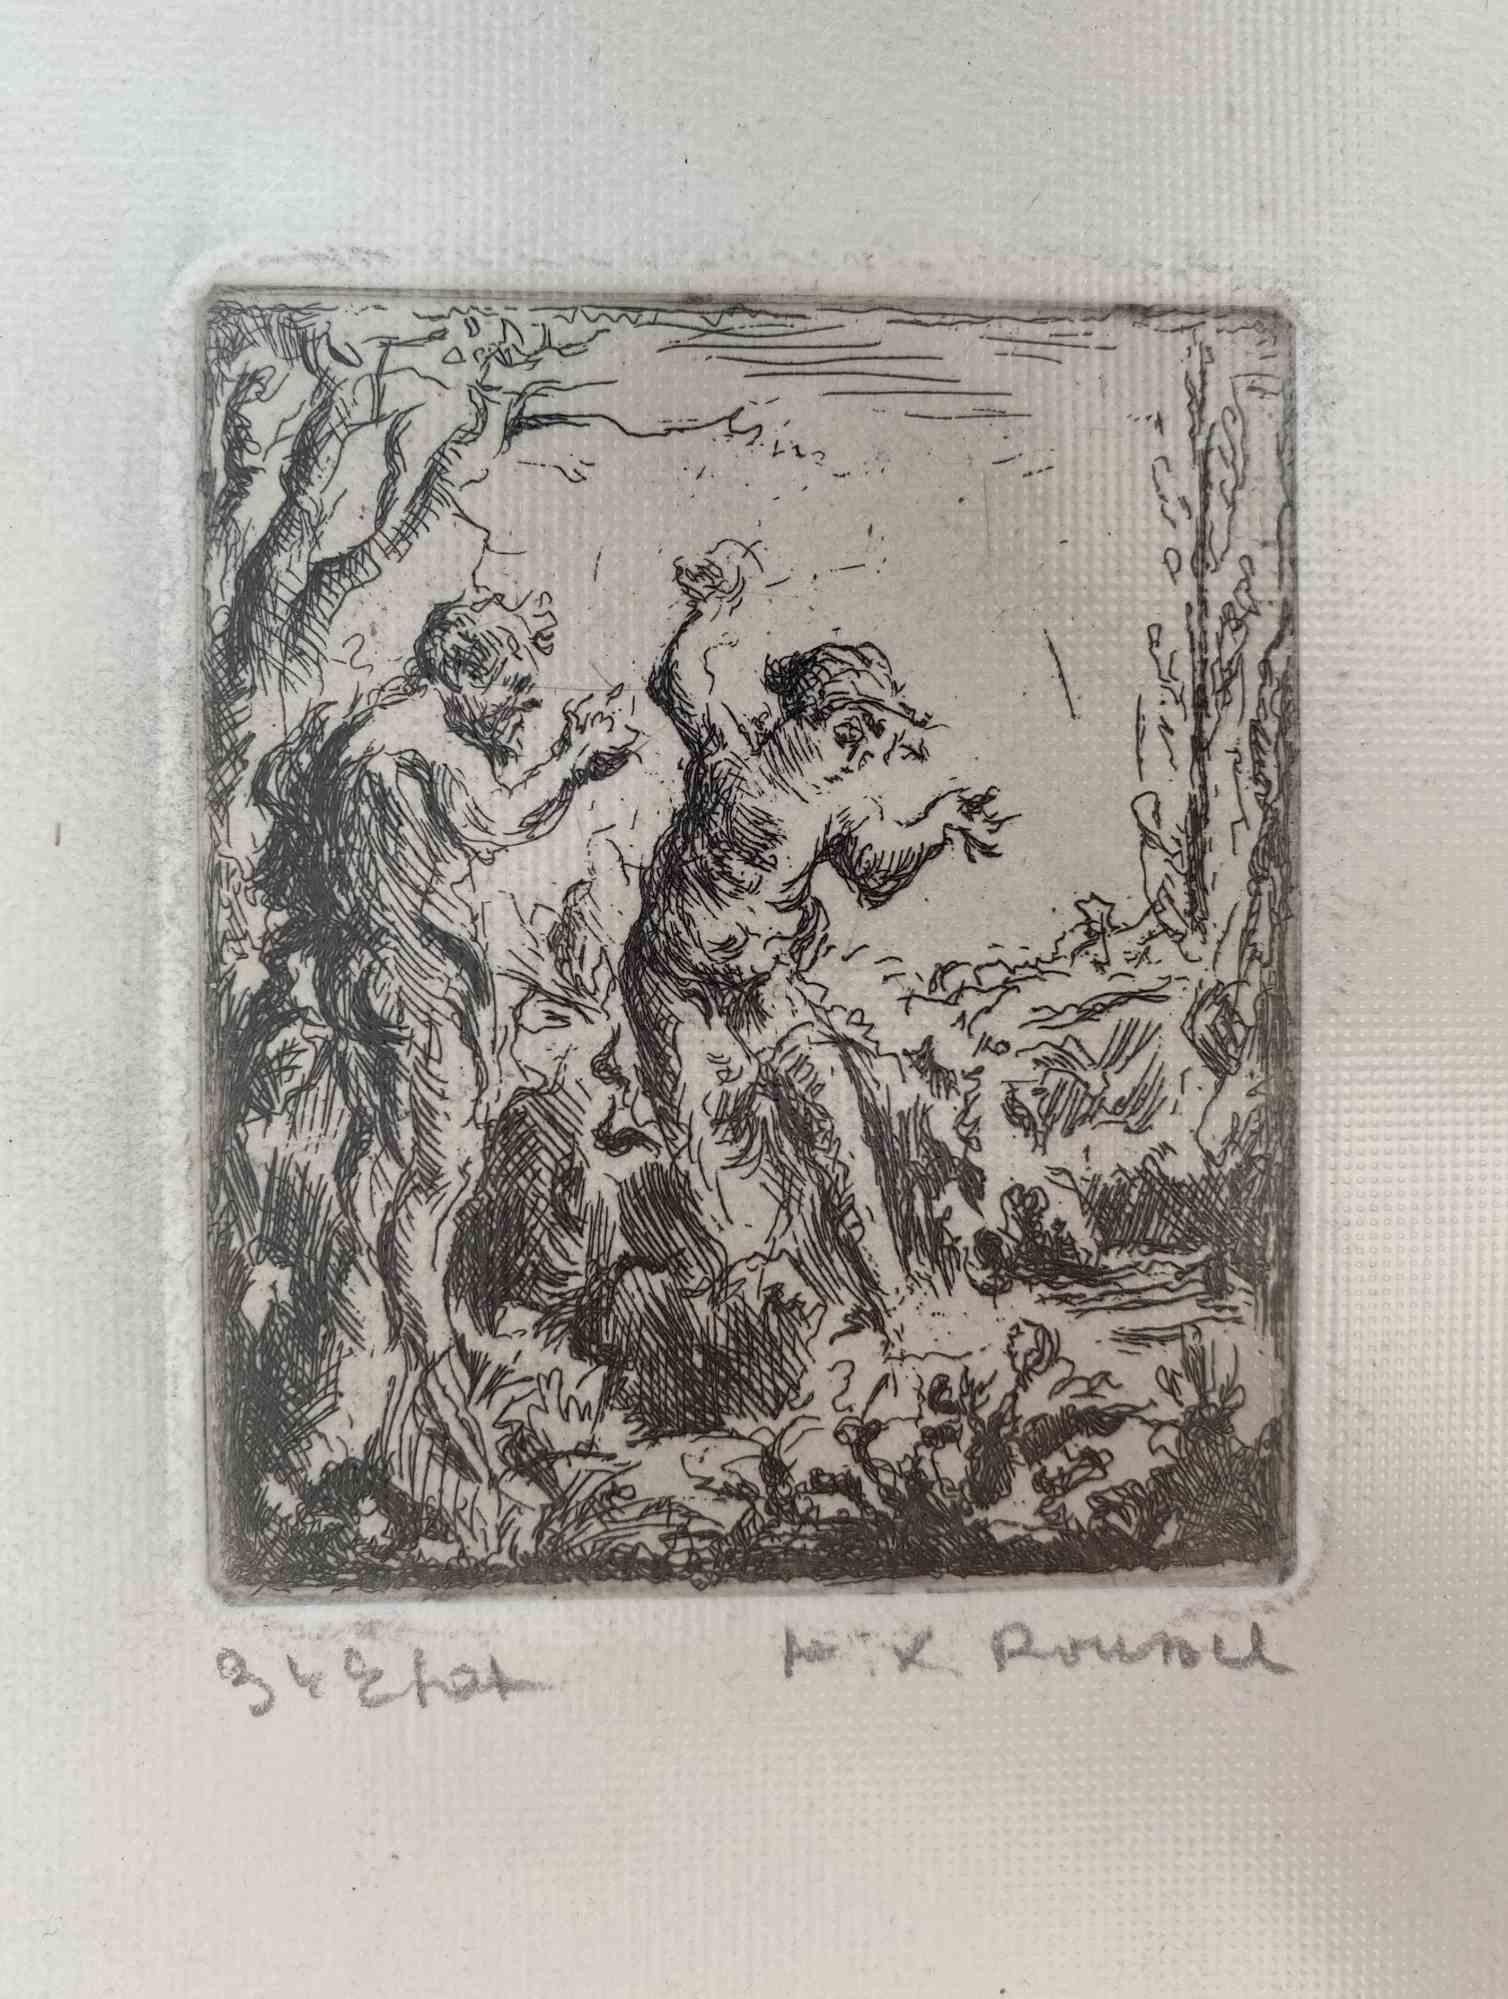 Nude in Woods ist eine Original-Radierung Druck Kunstwerk auf Elfenbein-farbigen Papier realisiert von Ker-Xavier Roussel im Jahr 1920 etwa.

Handsigniert am unteren rechten Rand. 

Sehr guter Zustand.

Ker-Xavier Roussel (Lorry-les-Metz, 1867 -